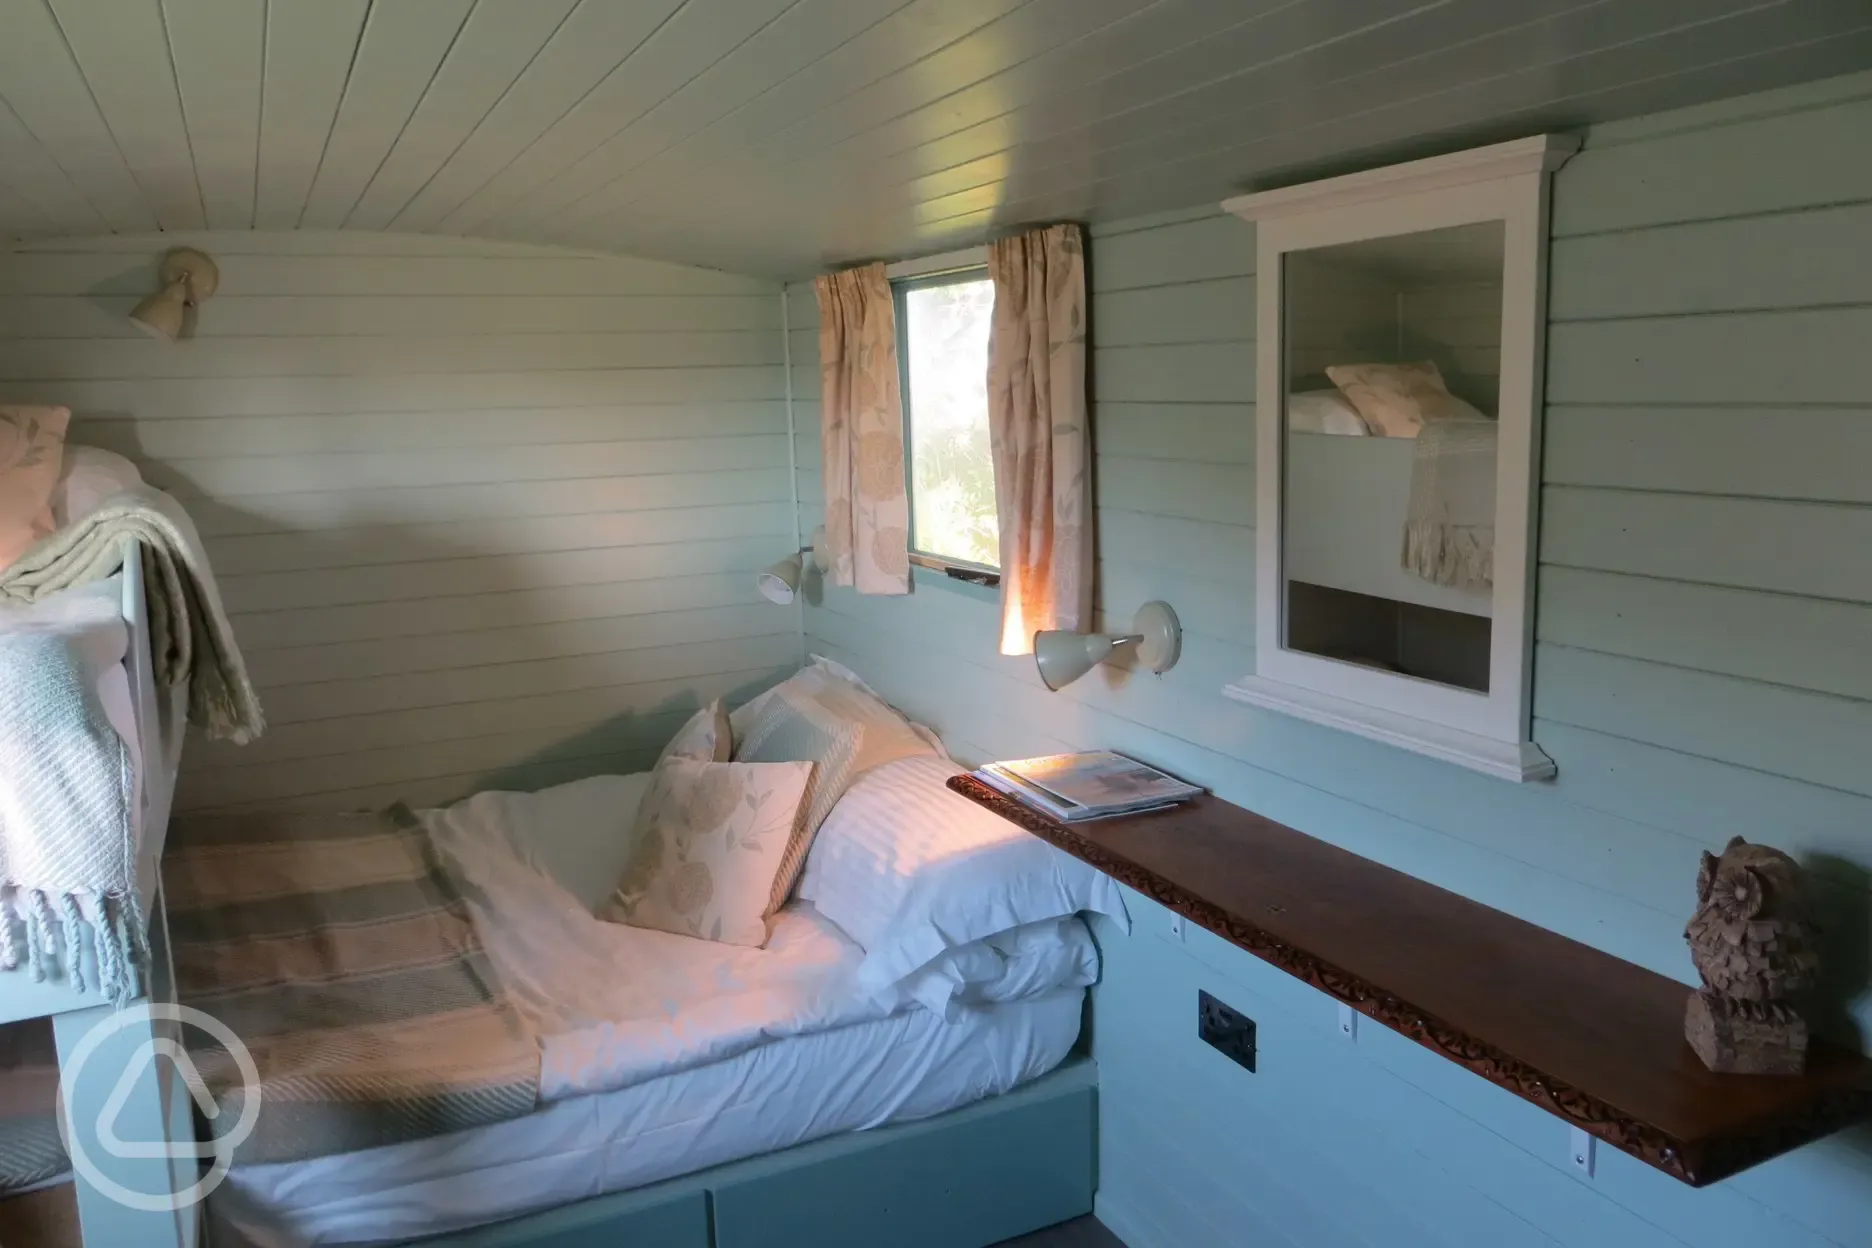 Tawny shepherd's hut interior